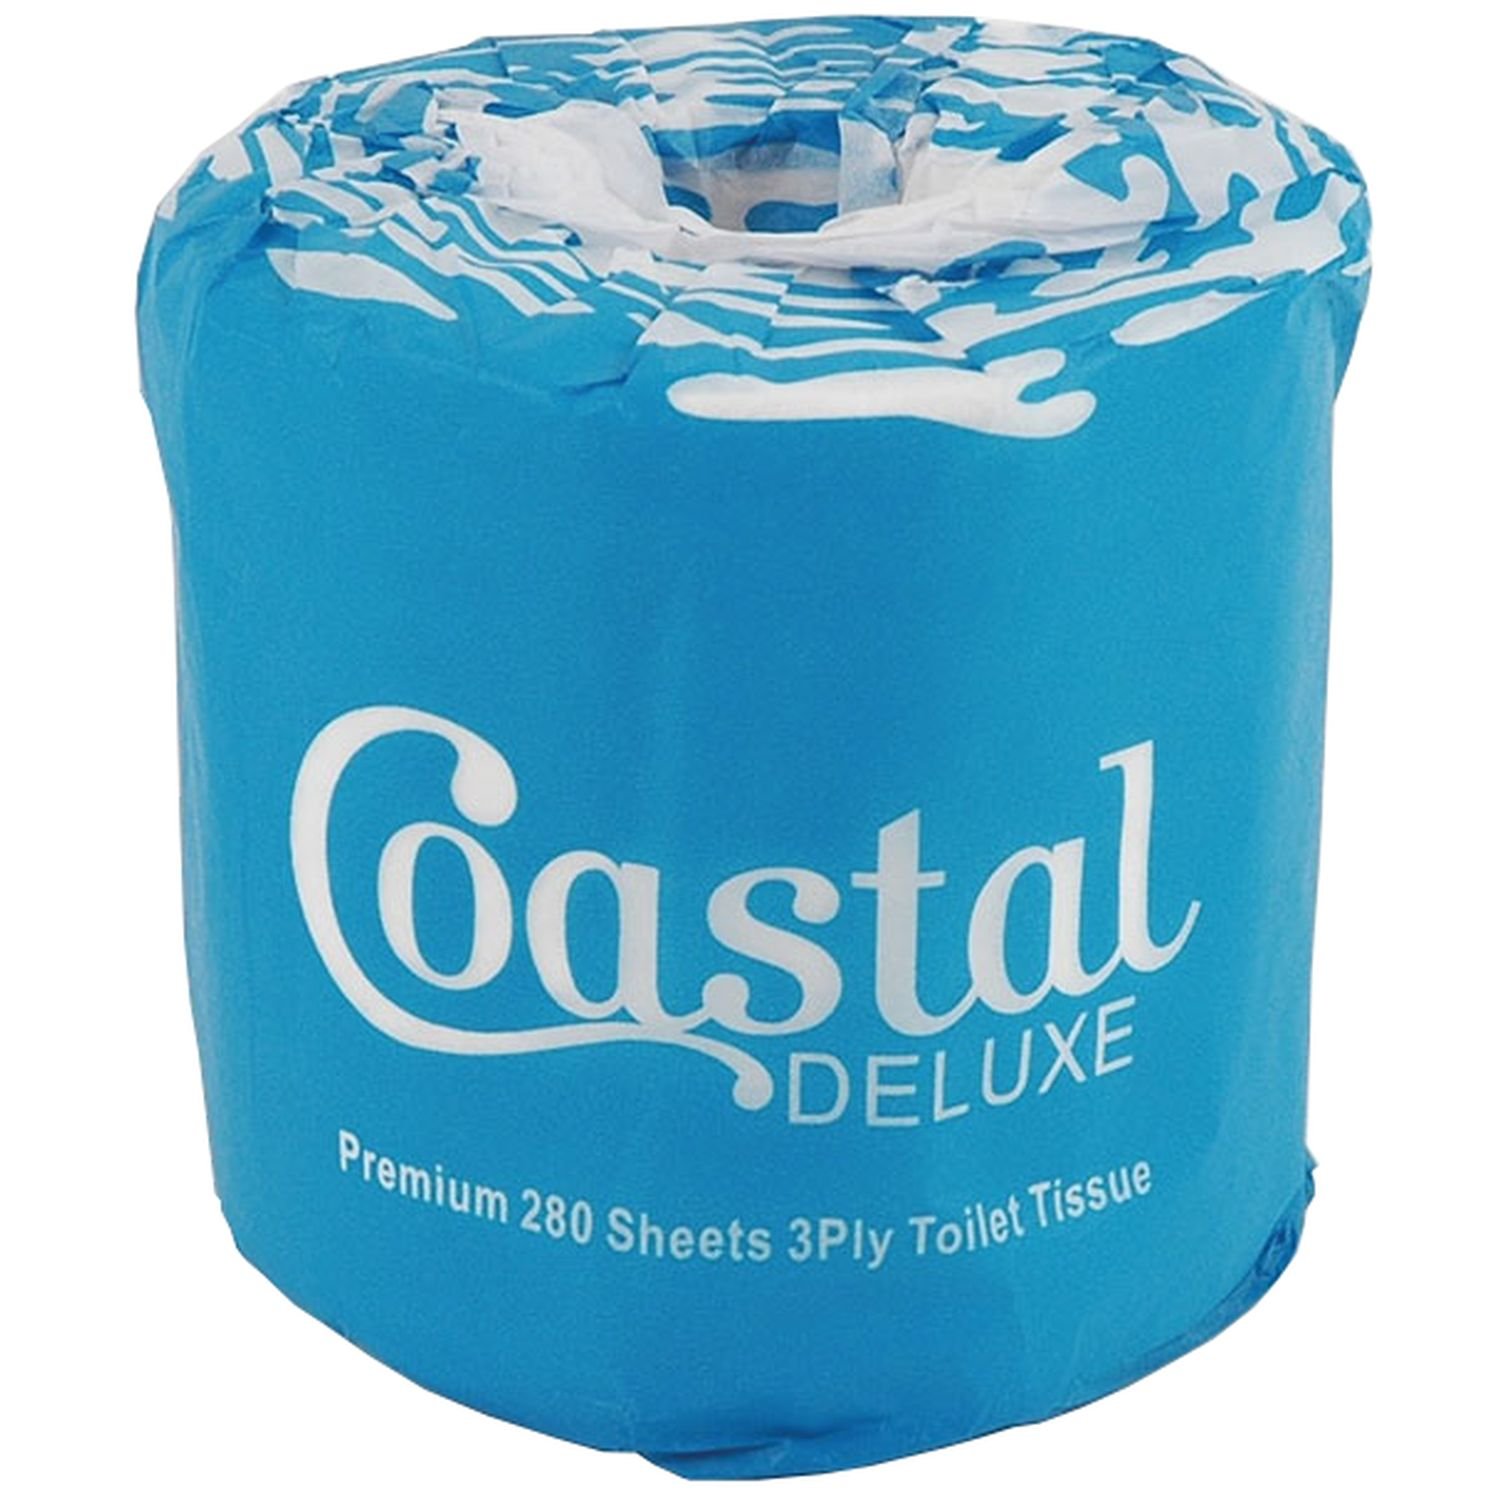 Coastal Deluxe 3ply Toilet Roll 280 Sheet Ctn 48